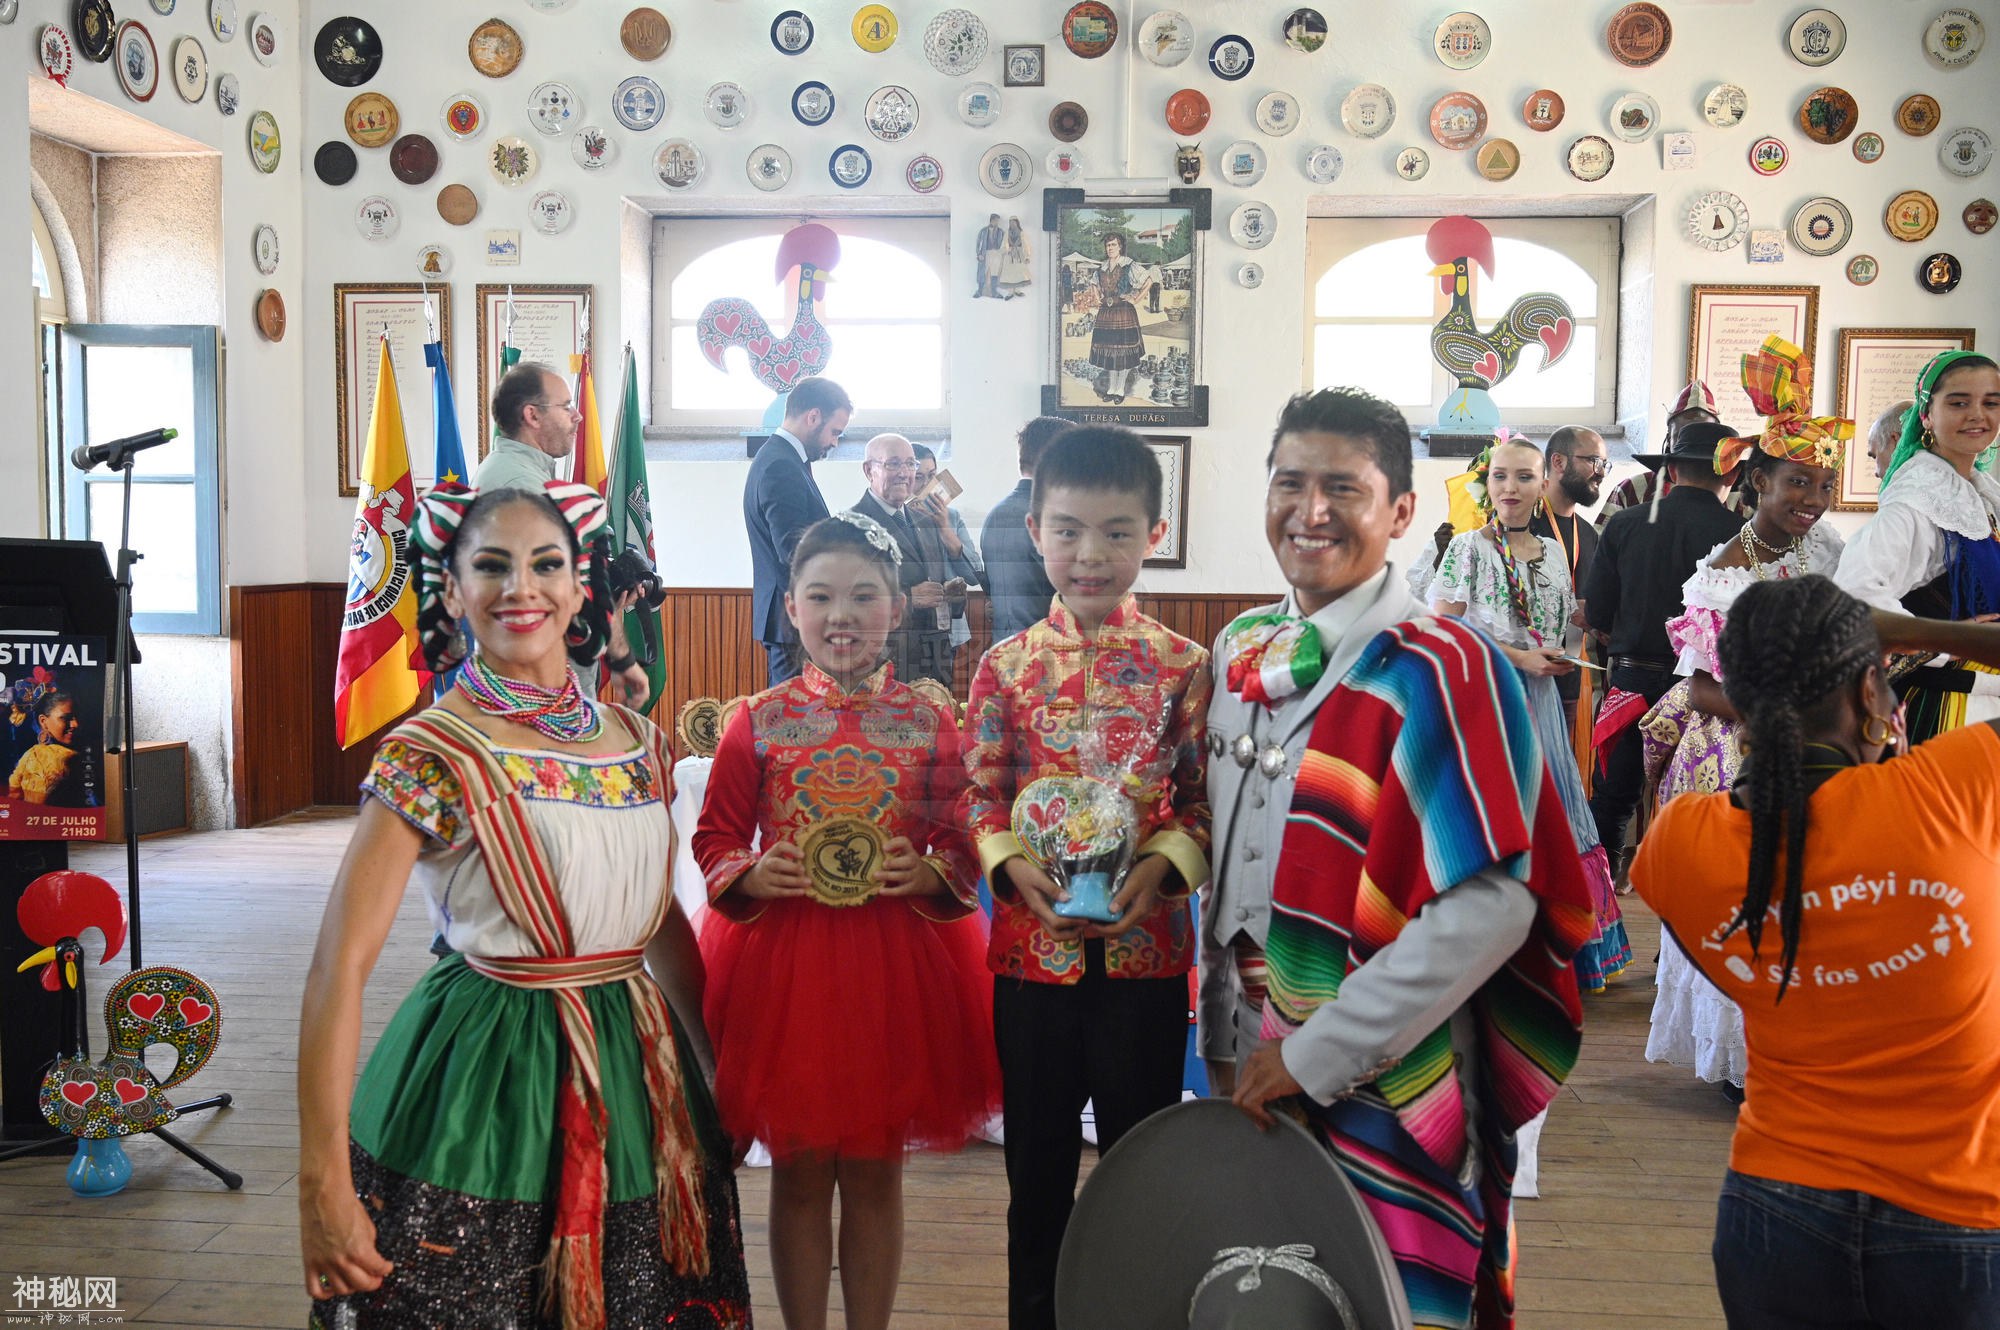 巴塞罗斯国际民俗节 中国民乐首次亮相 杭州这群孩子赚足了眼球-12.jpg